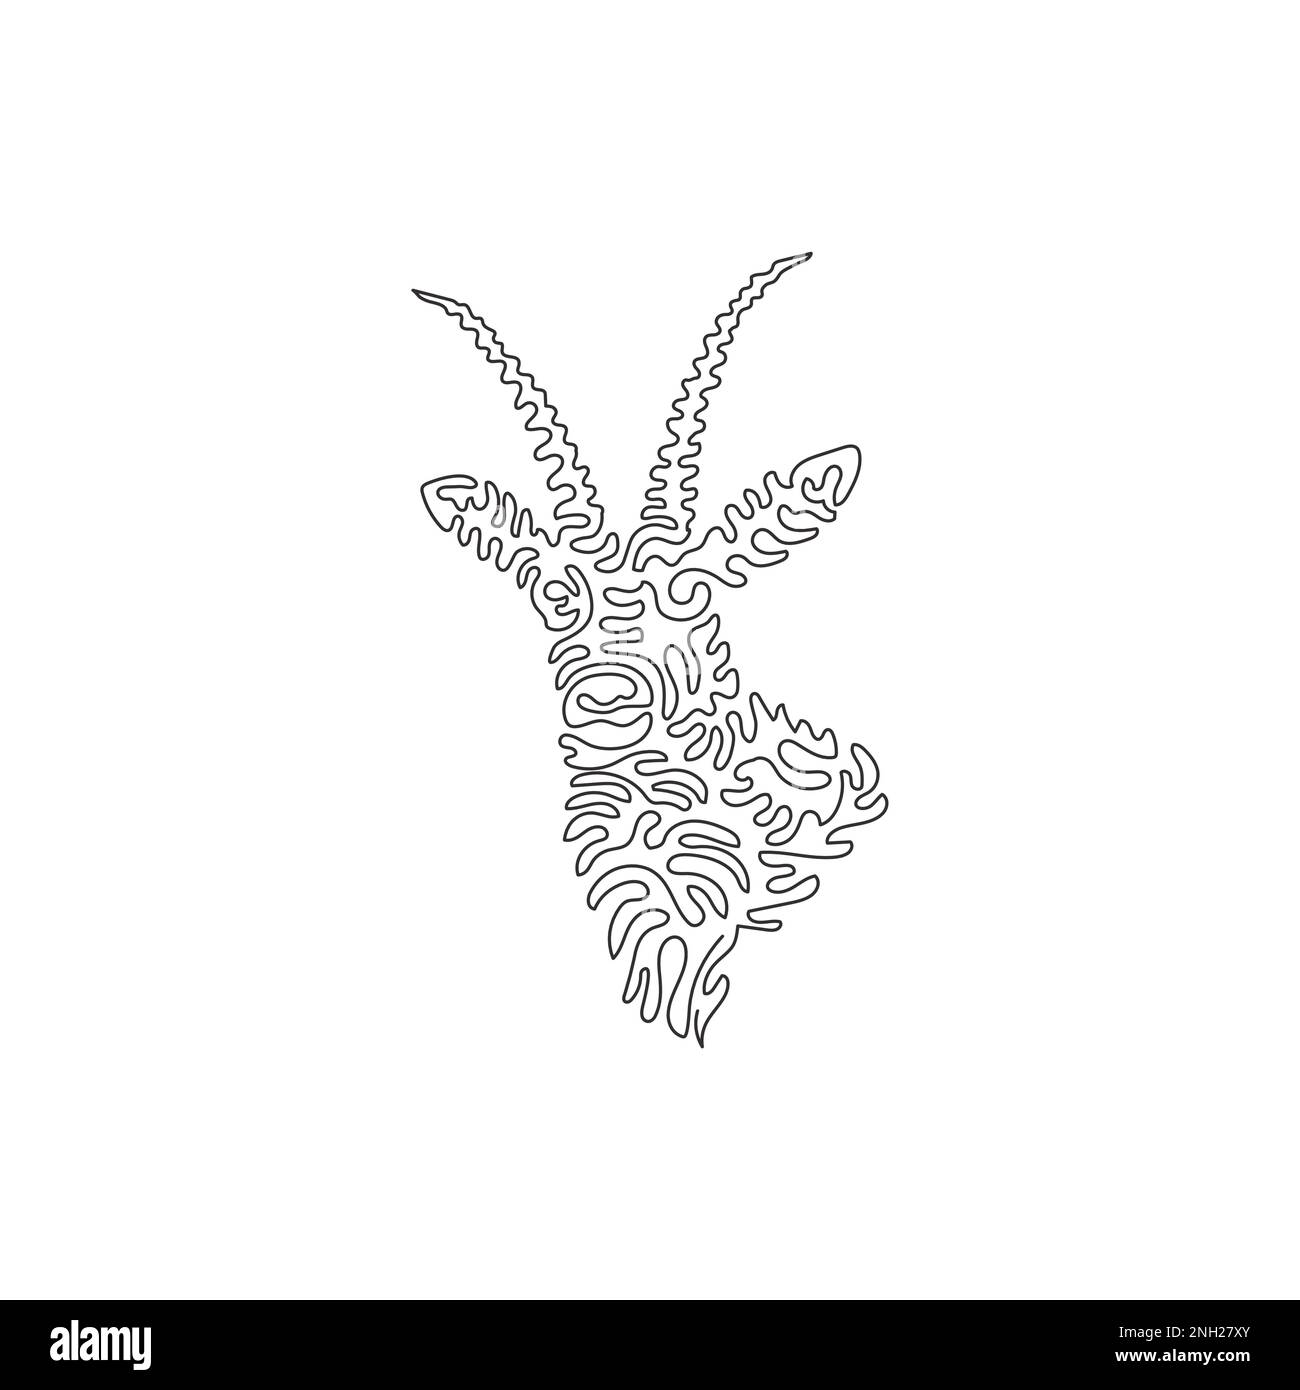 Un seul dessin d'une ligne de l'art abstrait de l'antilope mignon Dessin en ligne continue dessin graphique dessin vectoriel illustration de l'antilope avec de belles cornes Illustration de Vecteur